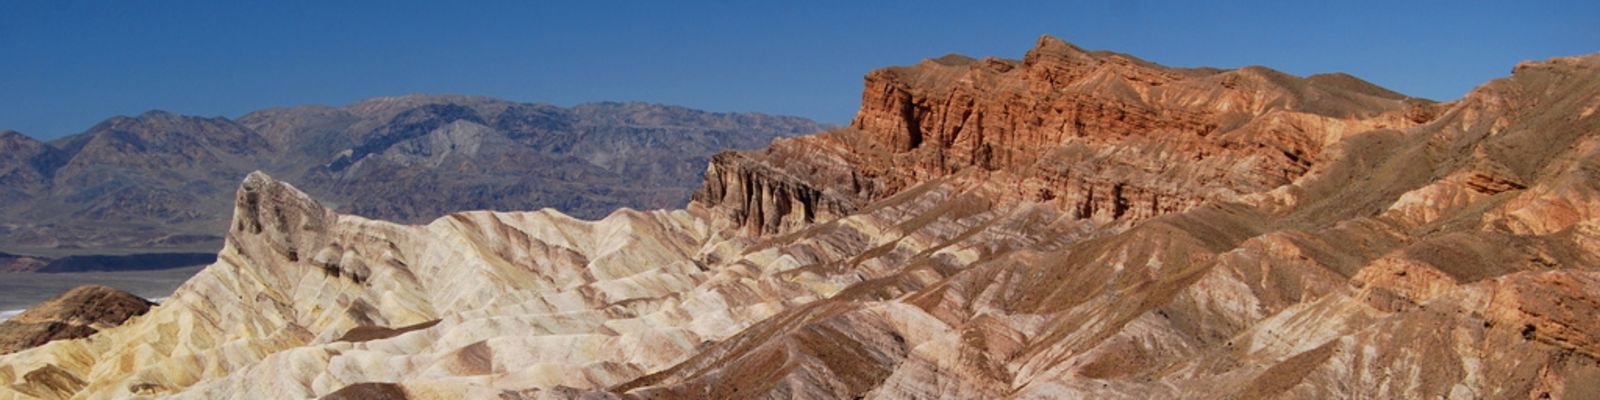 Impressionen Death Valley